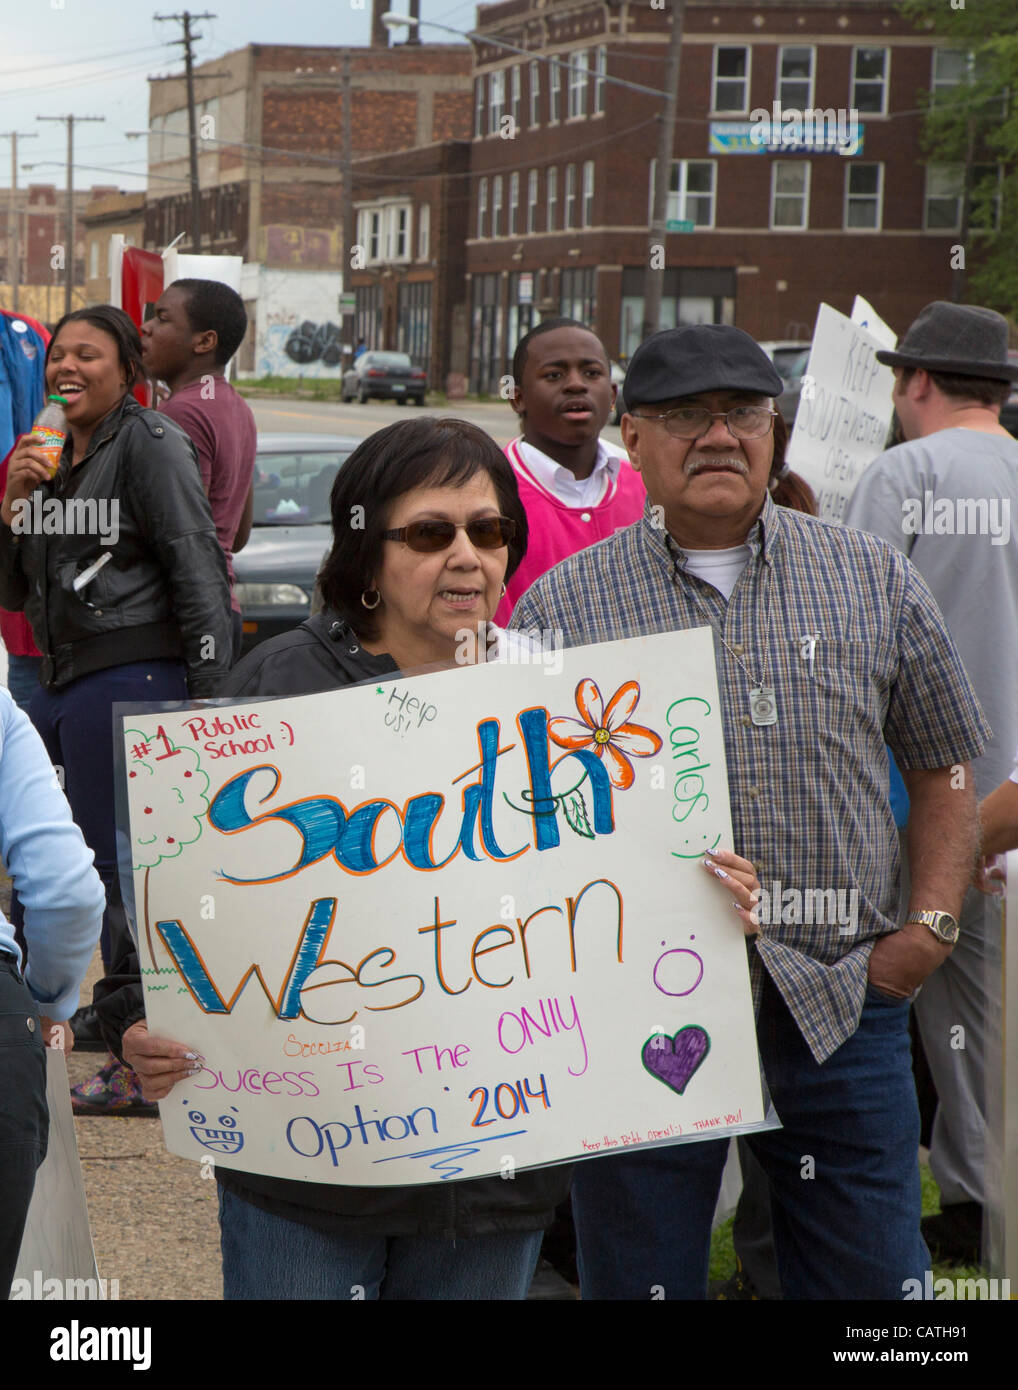 Detroit, Michigan - Studierenden, Alumni, Eltern und Gemeindemitglieder protestieren Detroit Public Schools' Plan, Southwestern High School zu schließen. Stockfoto